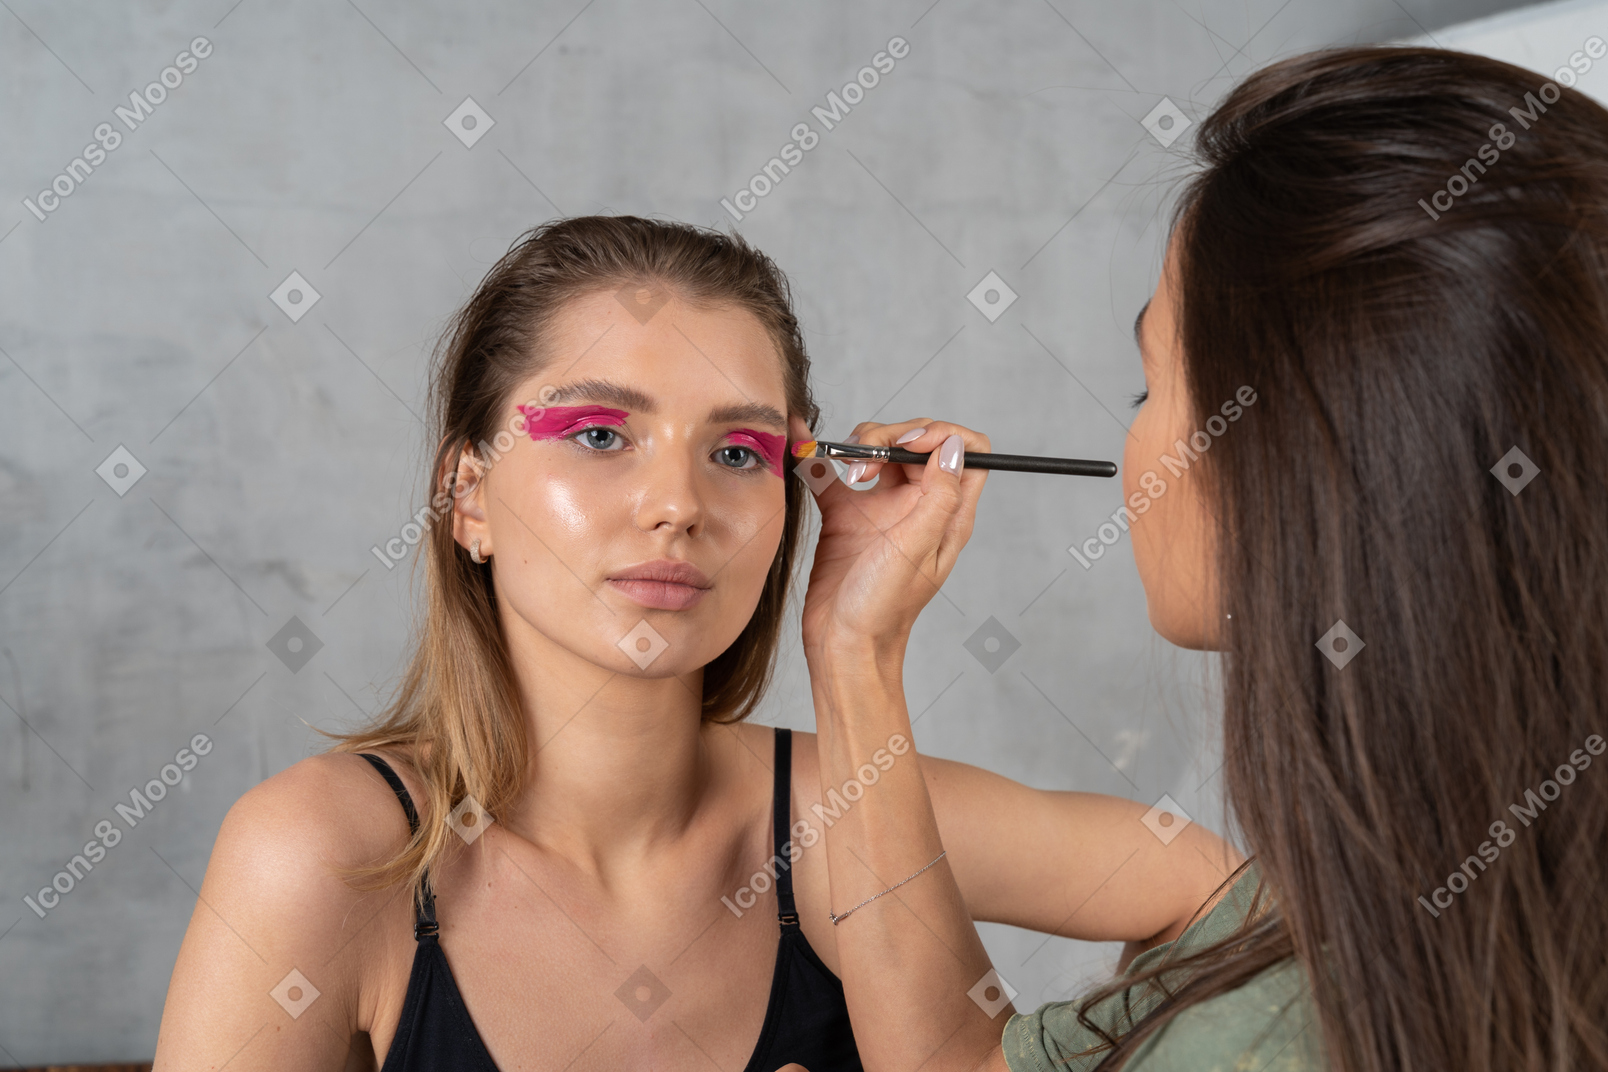 Vue de face d'une jeune femme avec un maquillage des yeux rose vif et sa maquilleuse